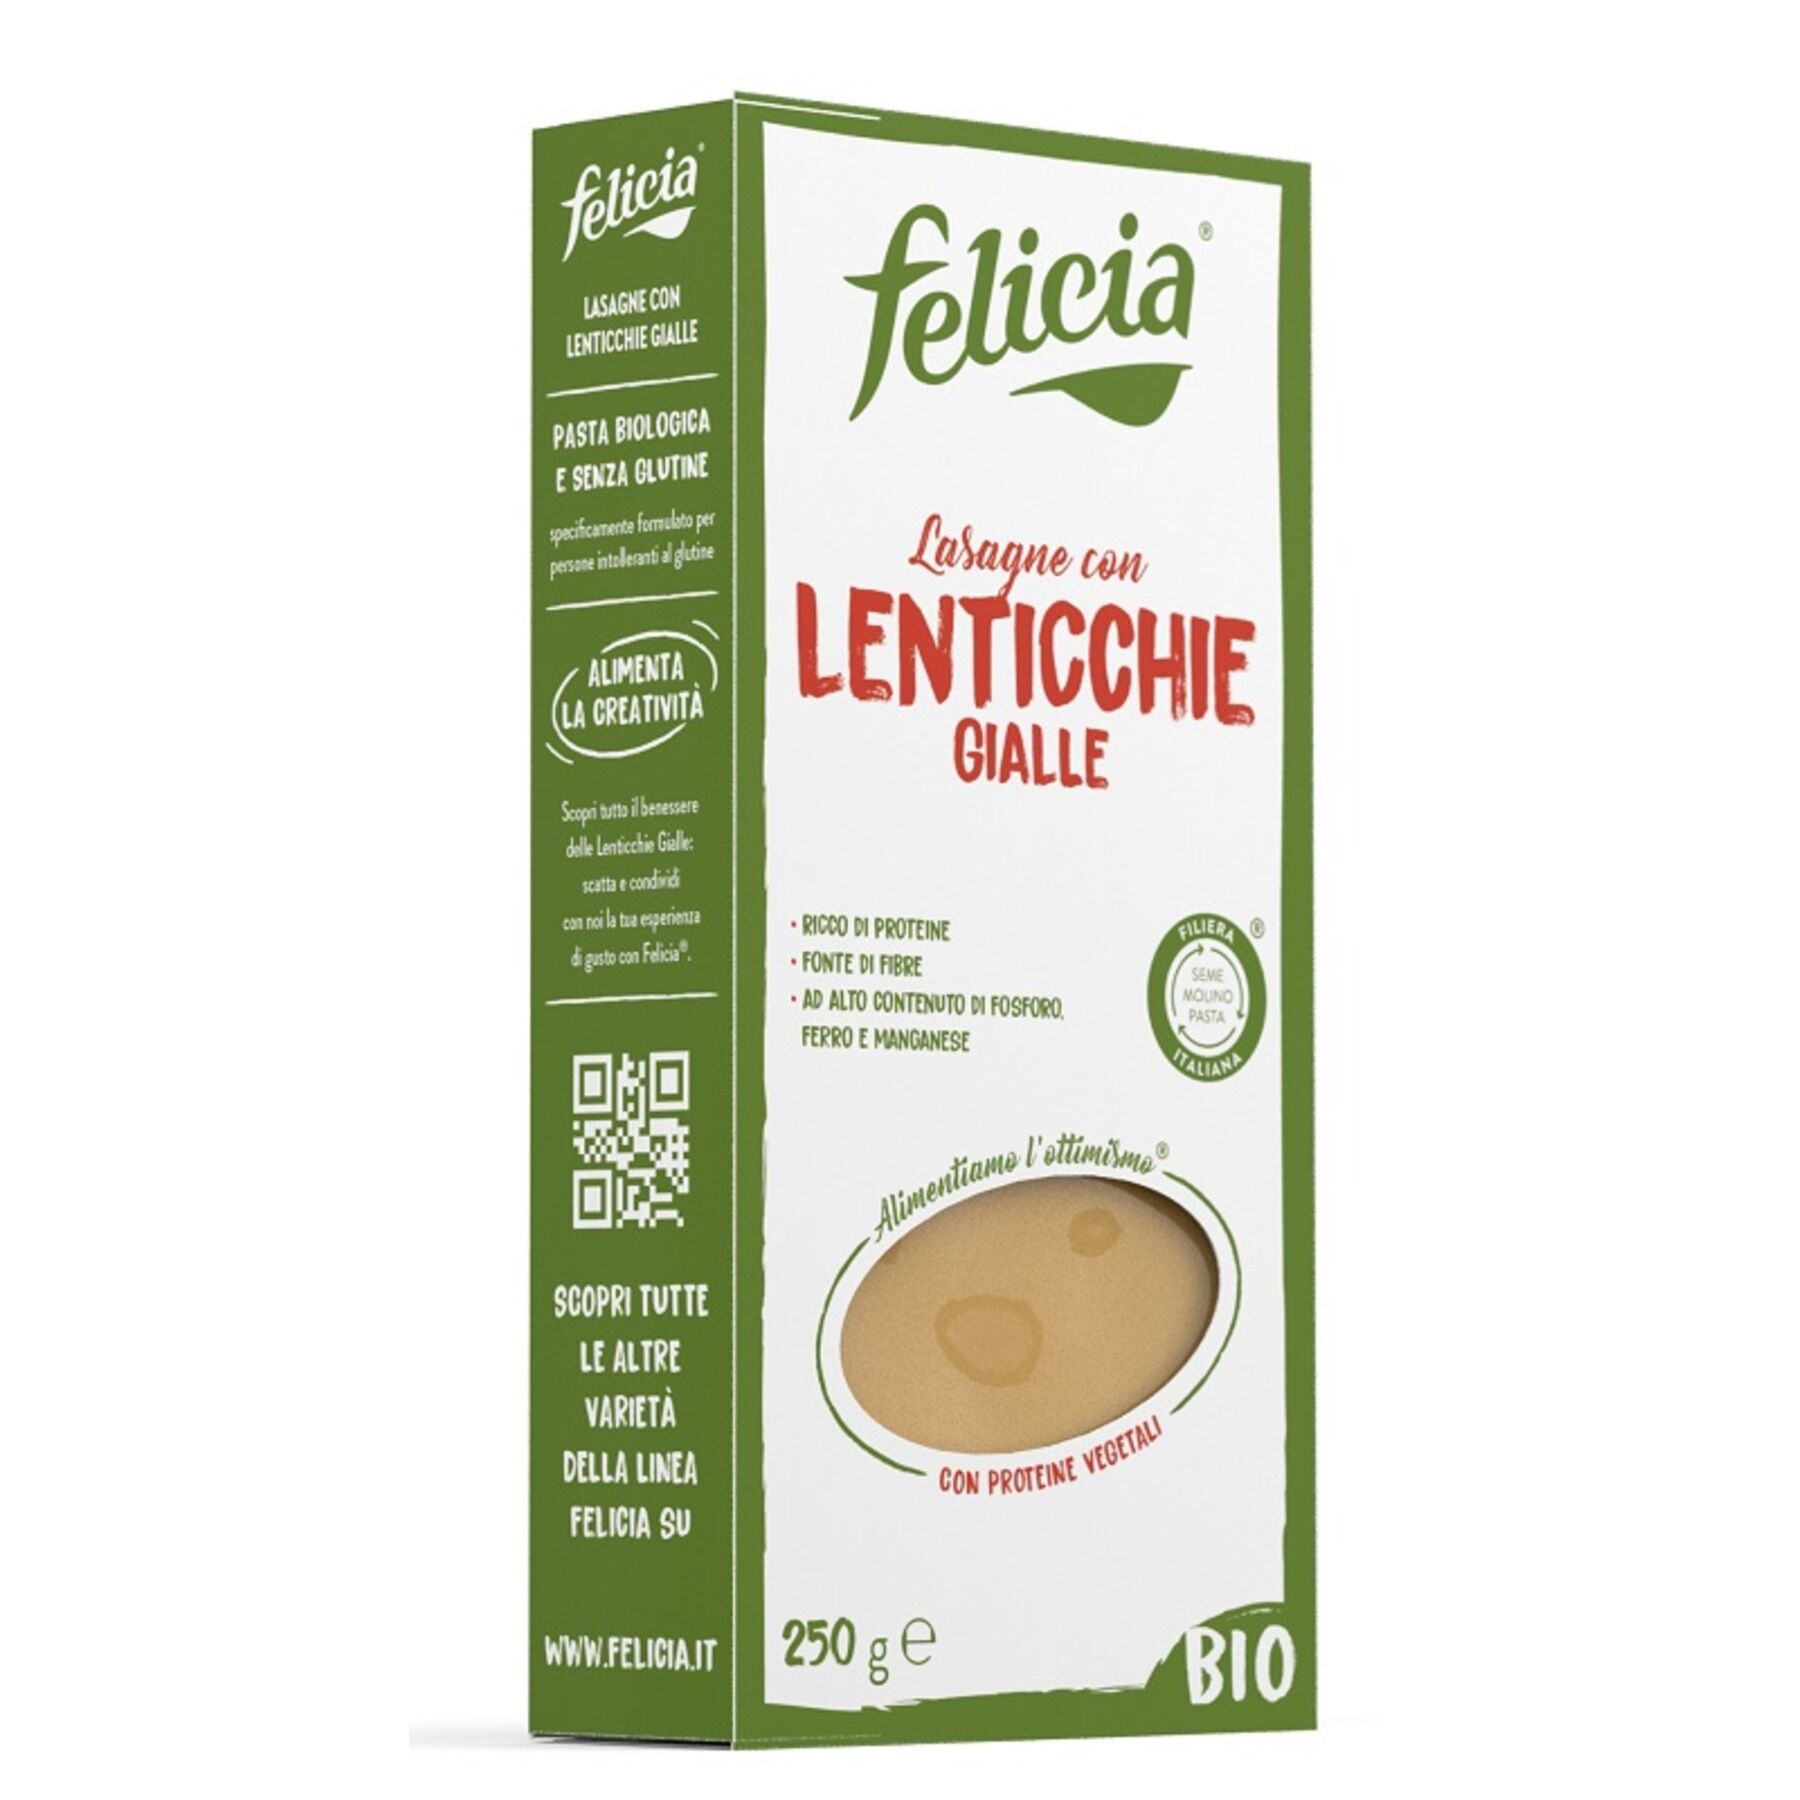 ANDRIANI SpA Felicia bio lasagne lenticchie gialle con riso integrale 250 g